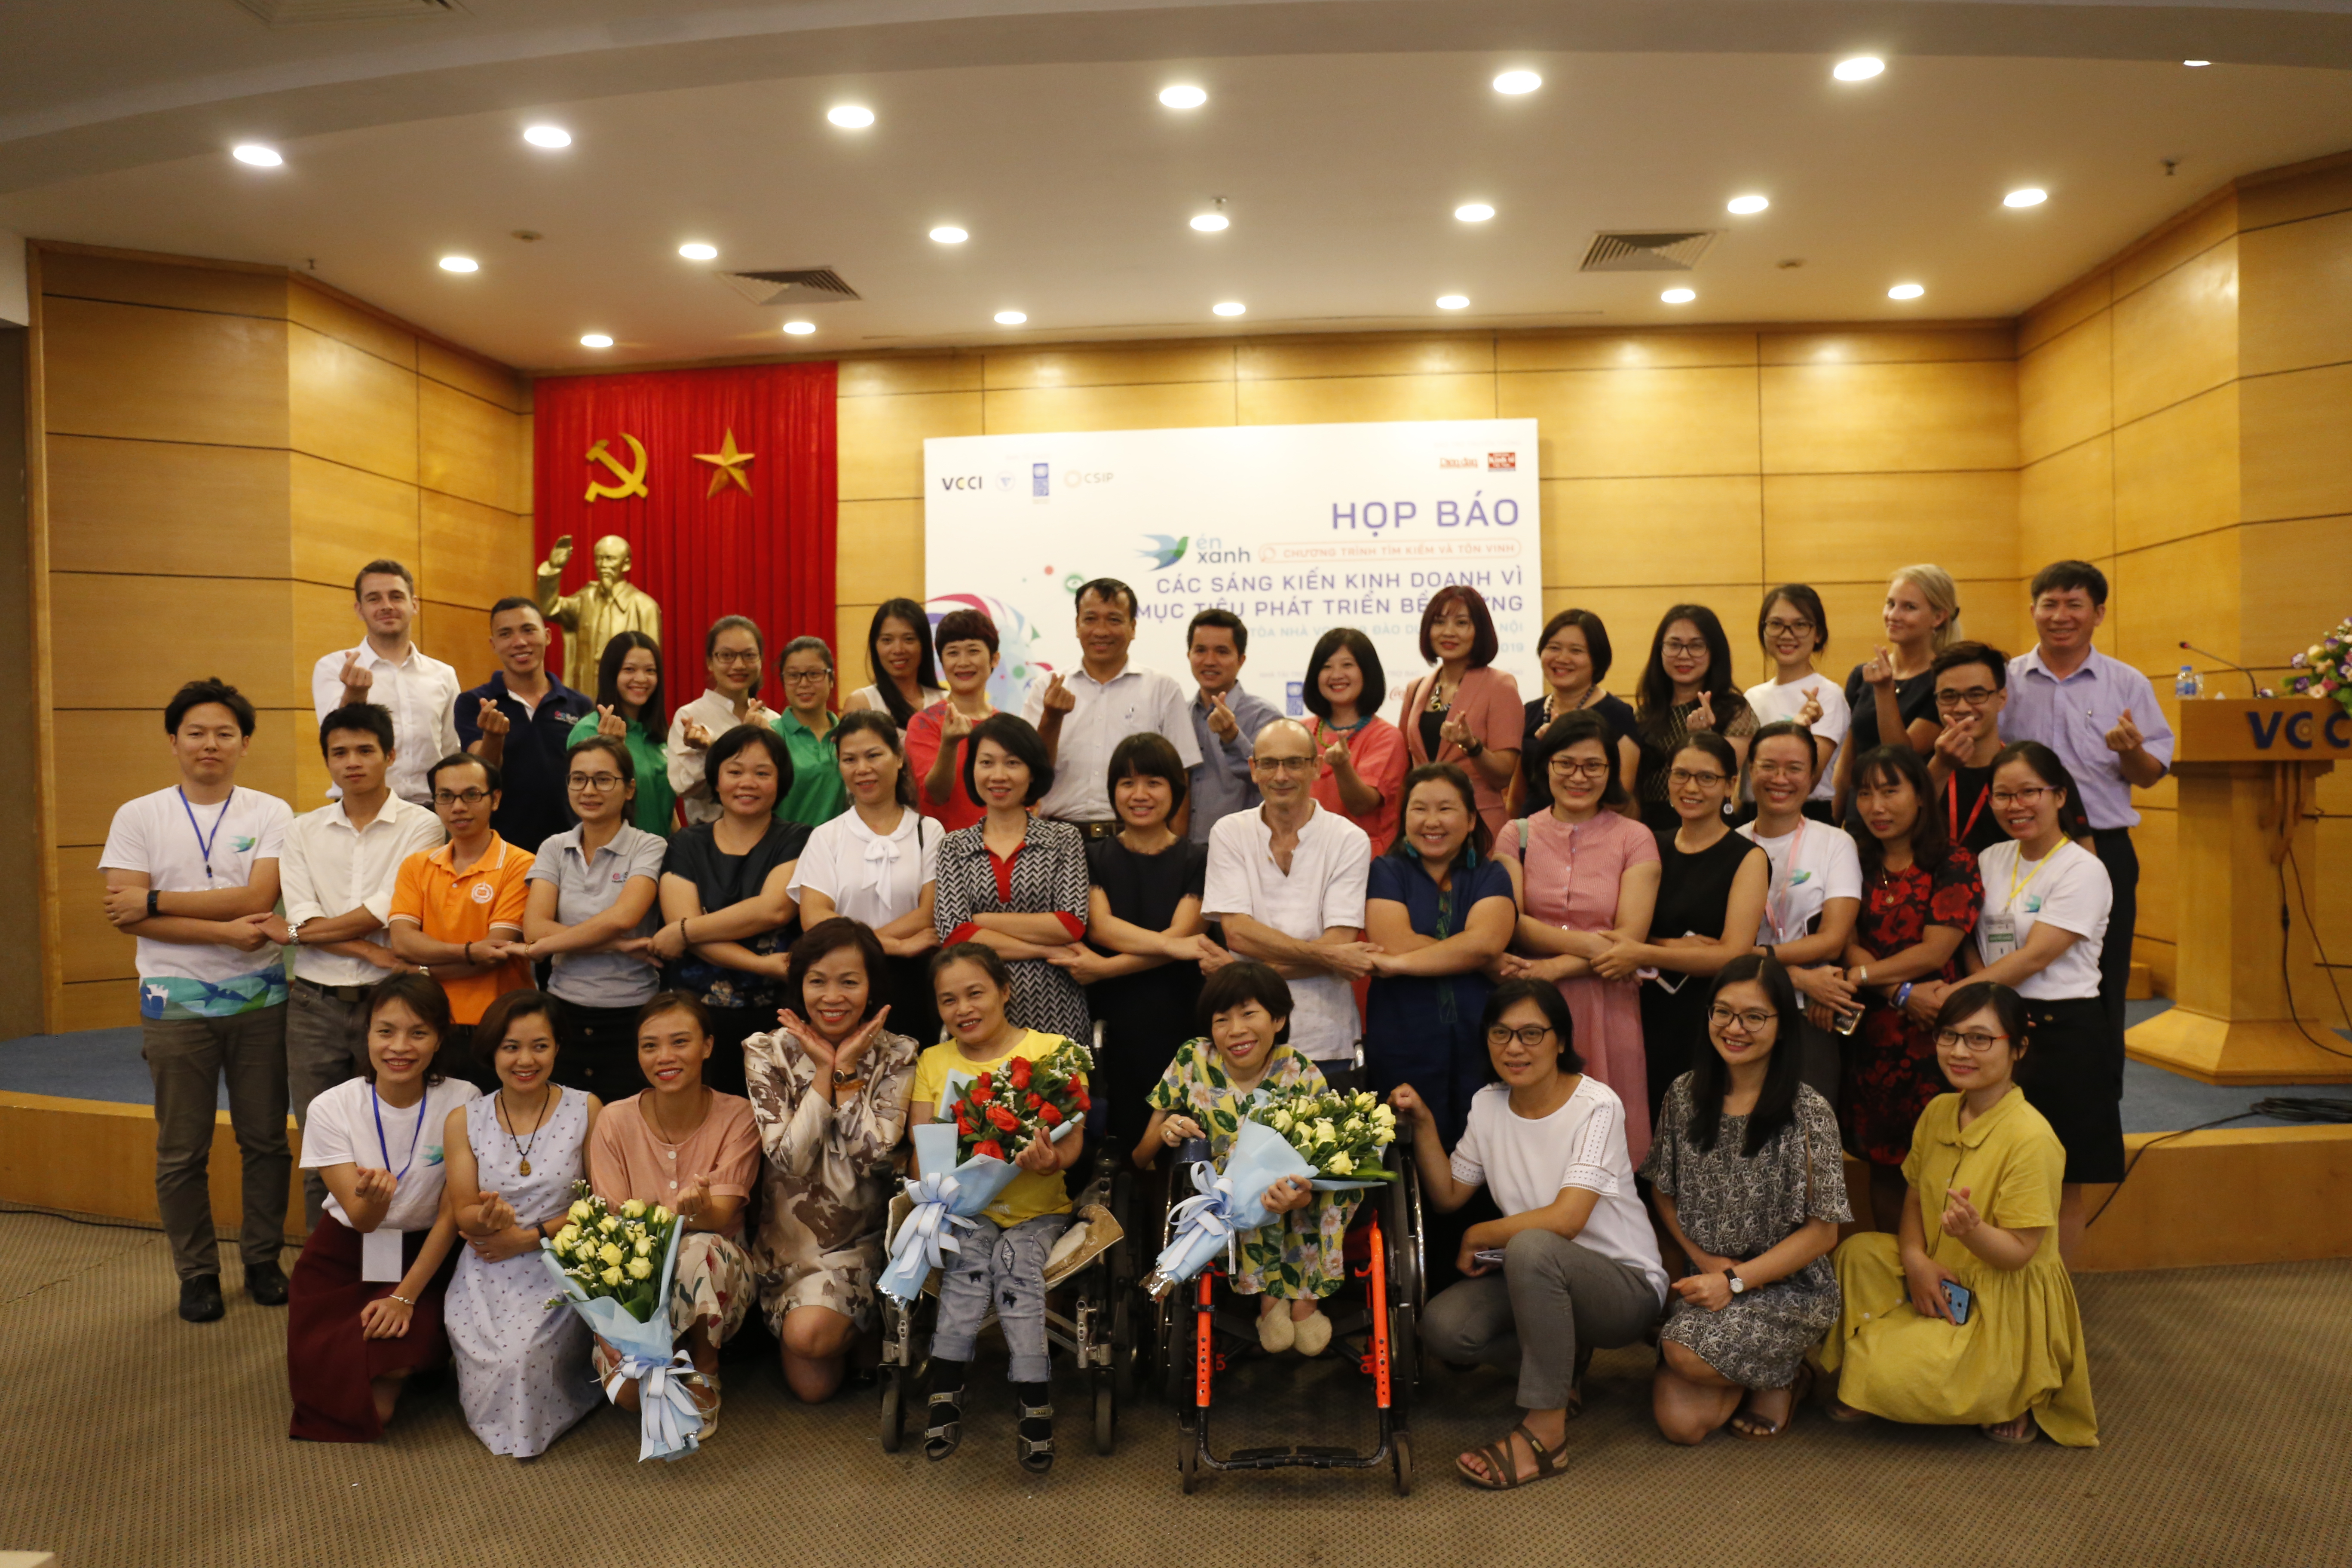 Ban tổ chức Én Xanh 2019, các doanh nghiệp đã tham gia năm 2017 và đại diện các tổ chức hỗ trợ chụp ảnh lưu niệm tại buổi họp báo 24/7 ở Hà Nội | Ảnh: Ngô Hà